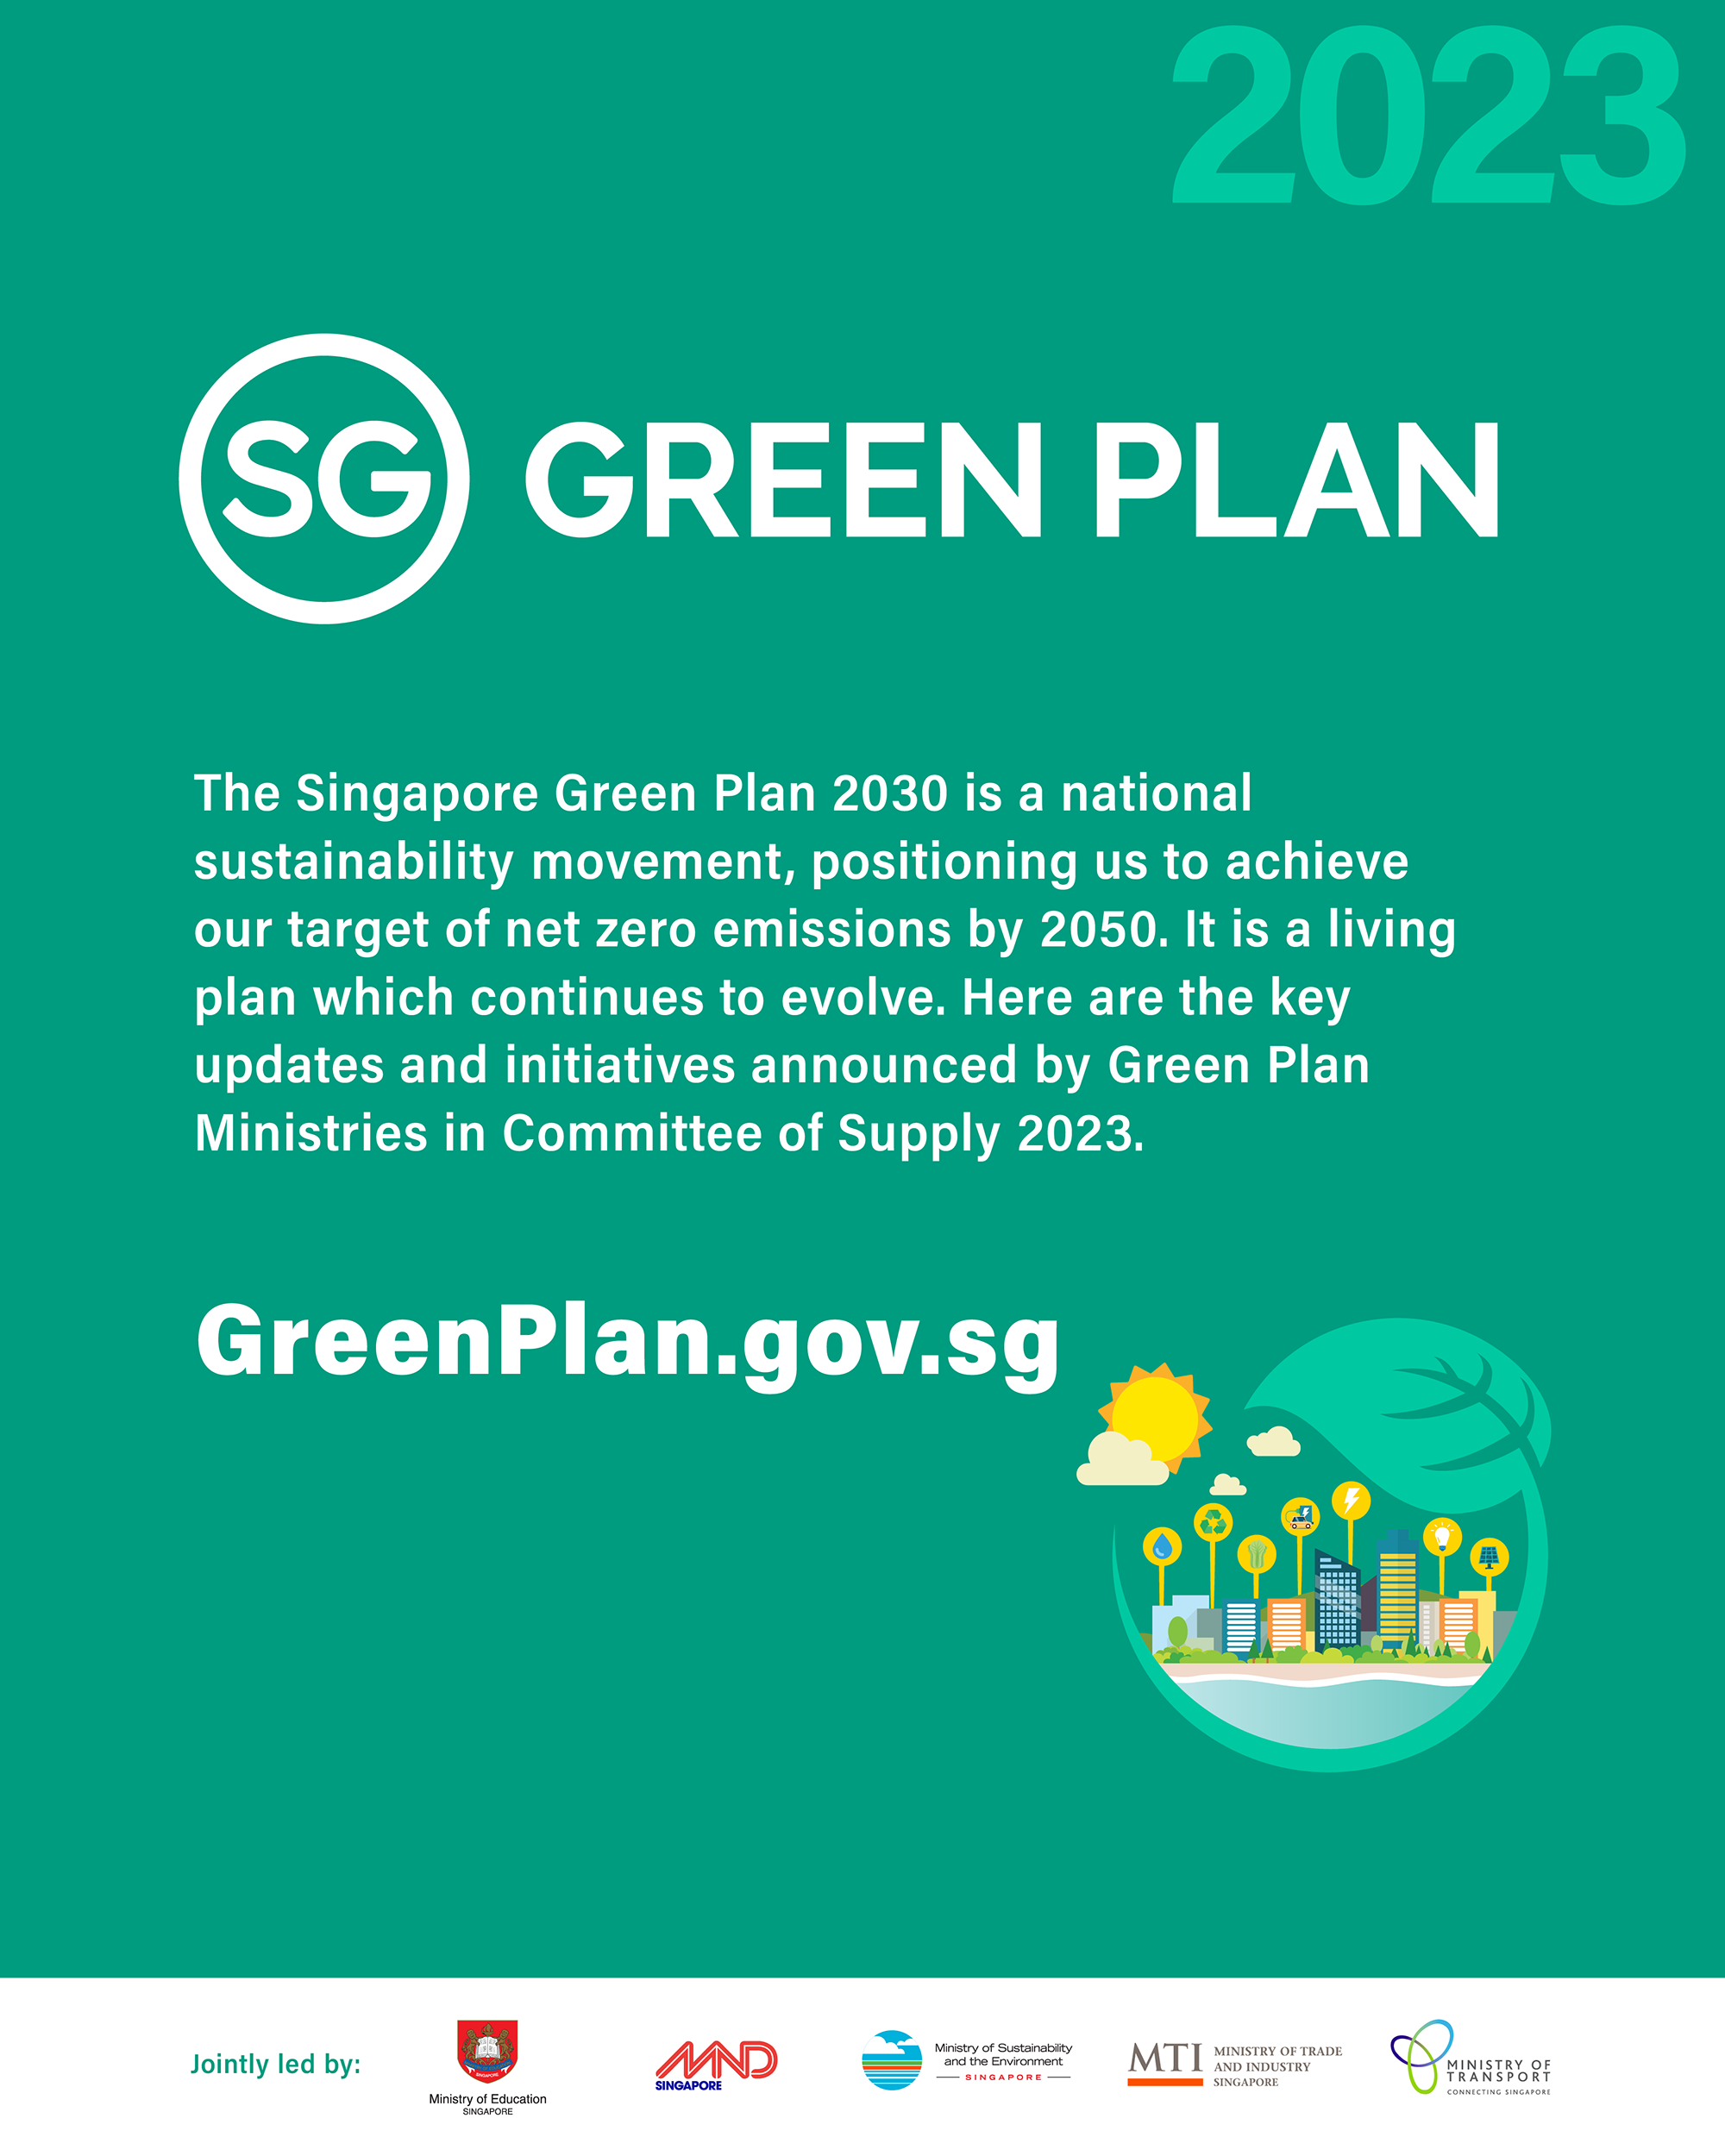 COS 2023 Singapore Green Plan 2030 Image 1